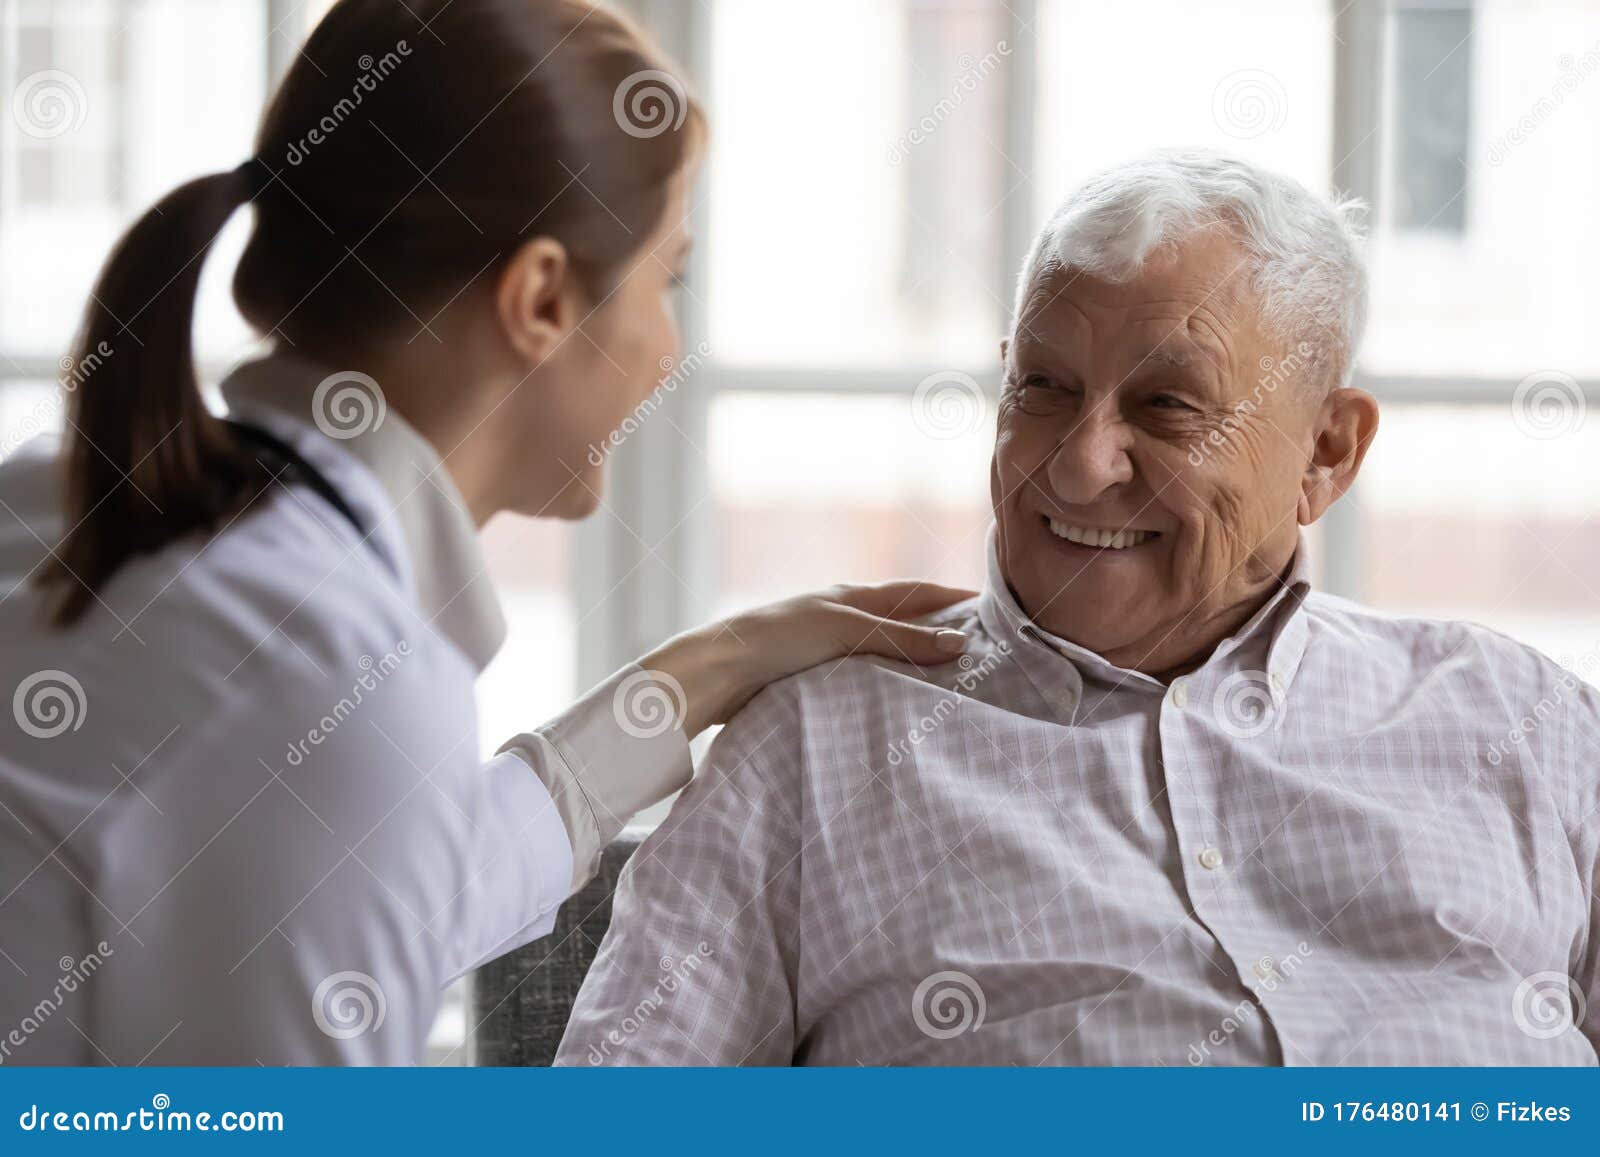 caring geriatric nurse in white coat cares for elderly man